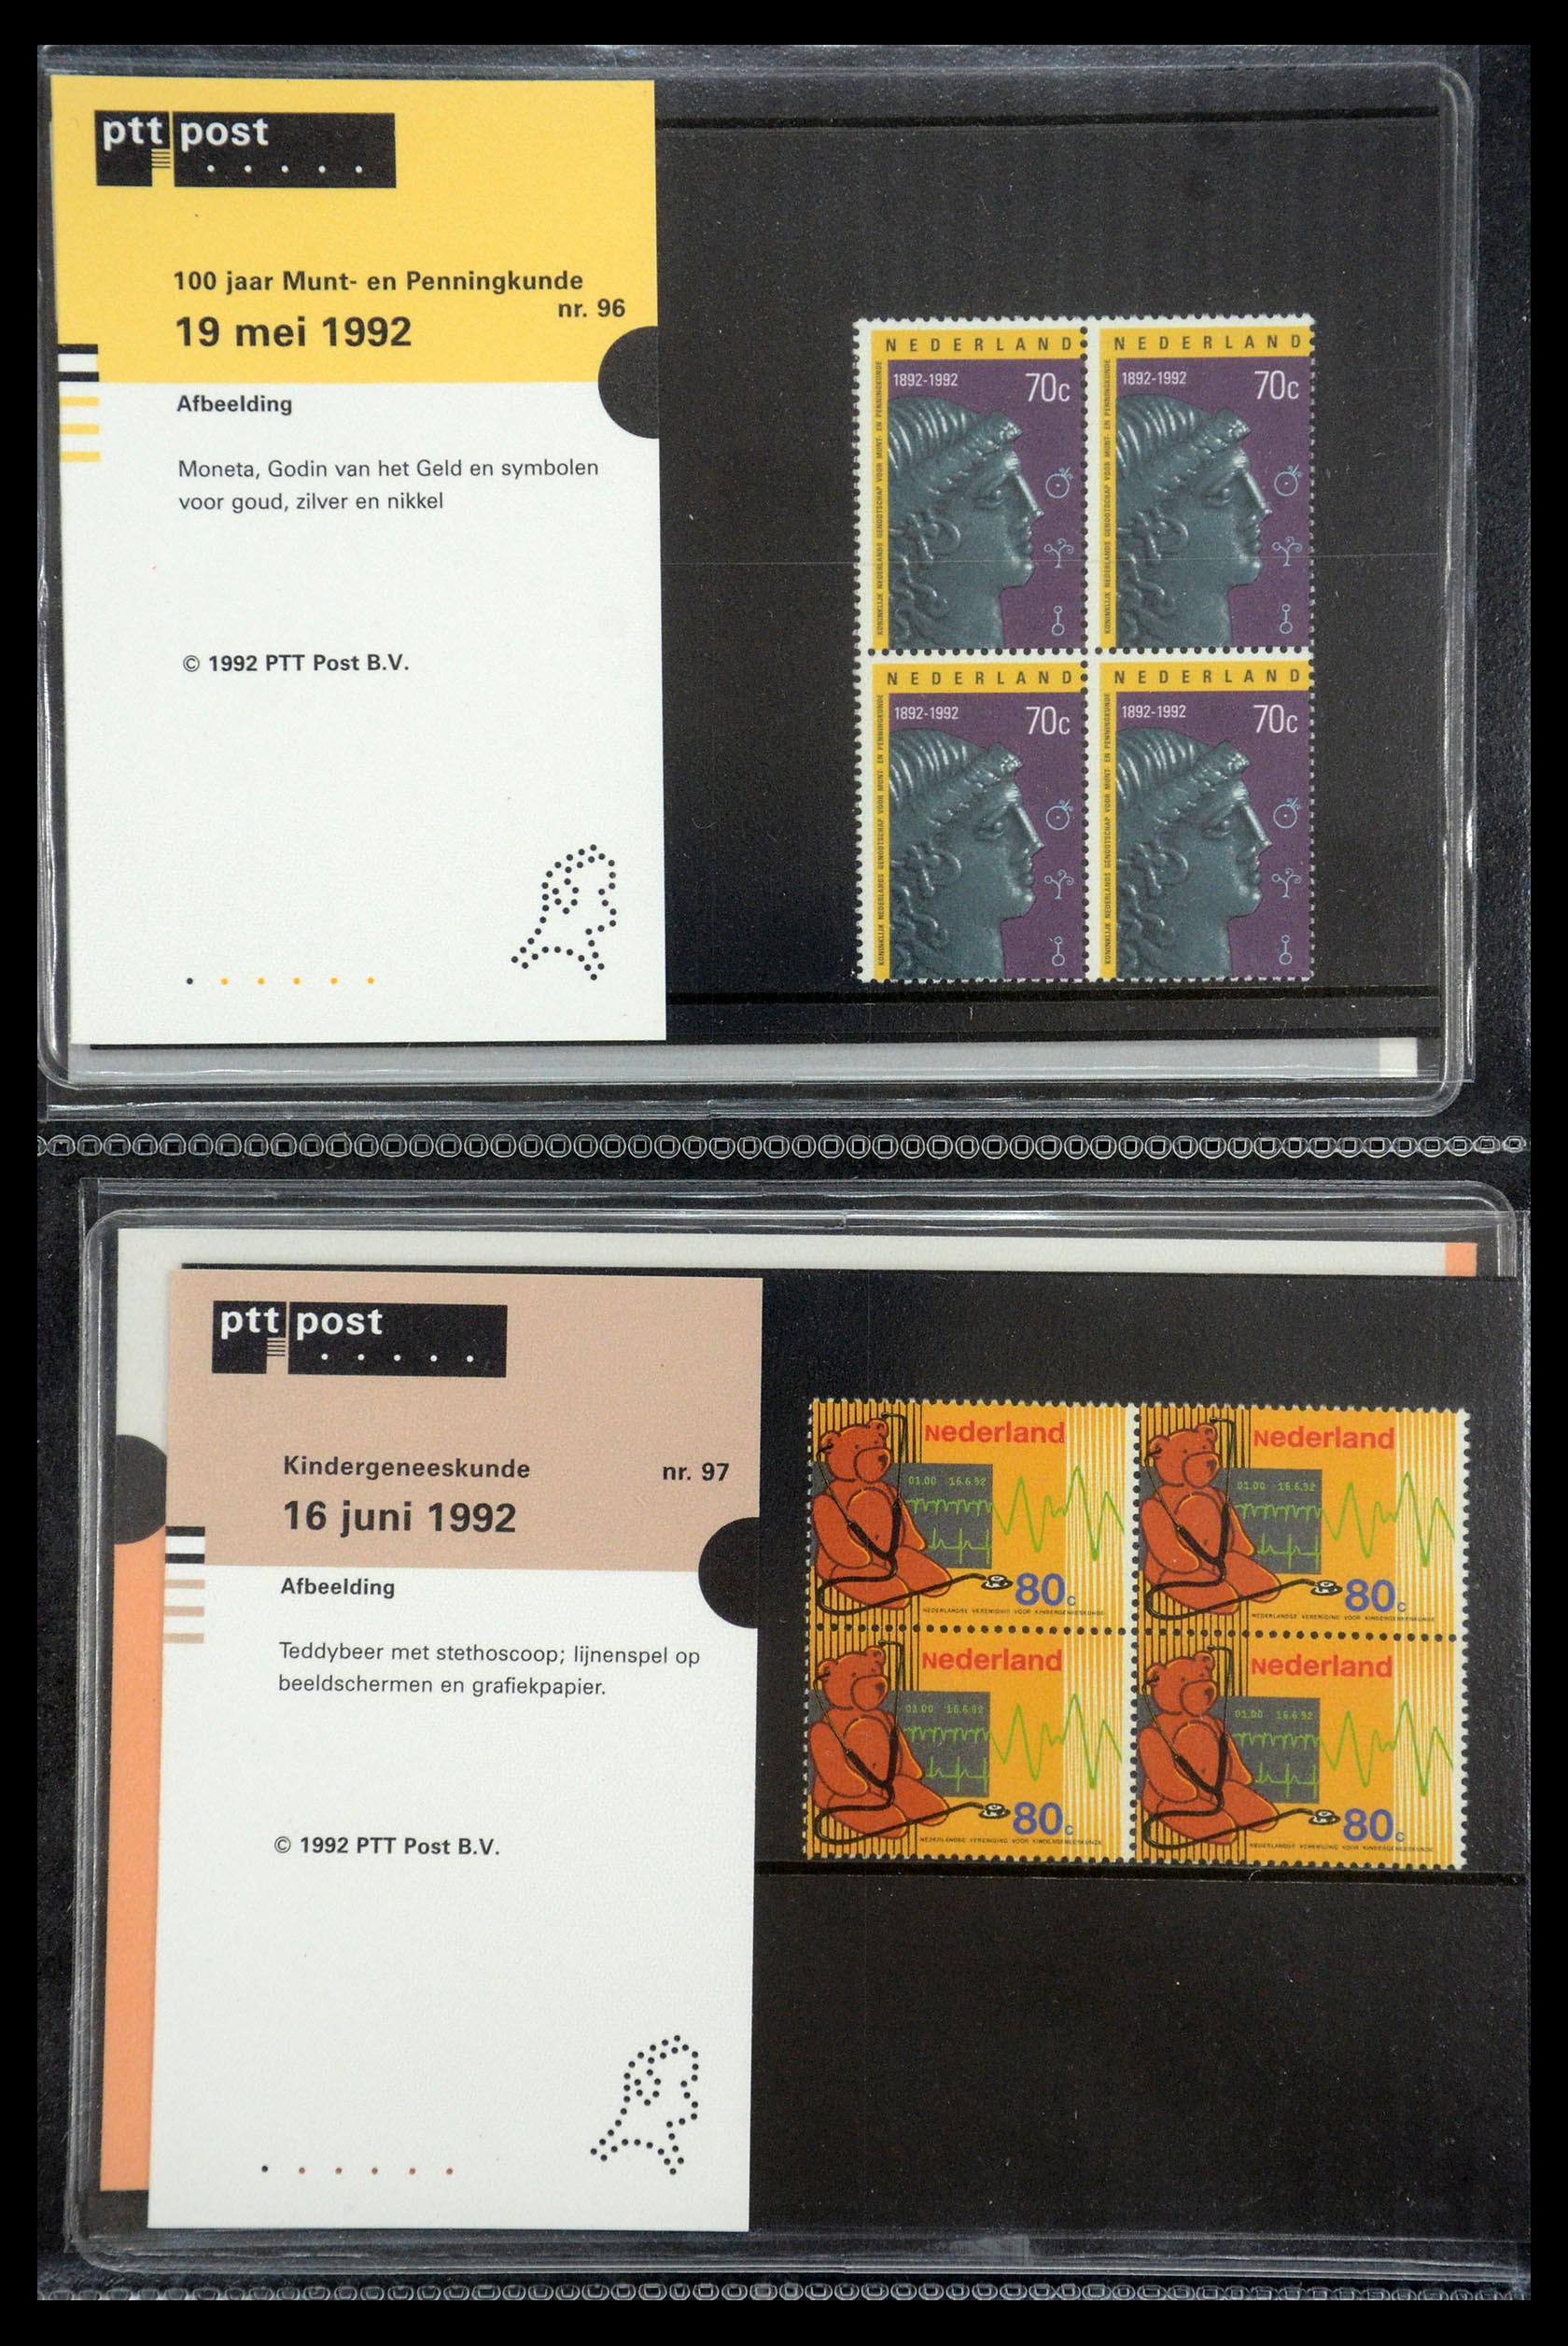 35187 049 - Stamp Collection 35187 Netherlands PTT presentation packs 1982-2019!